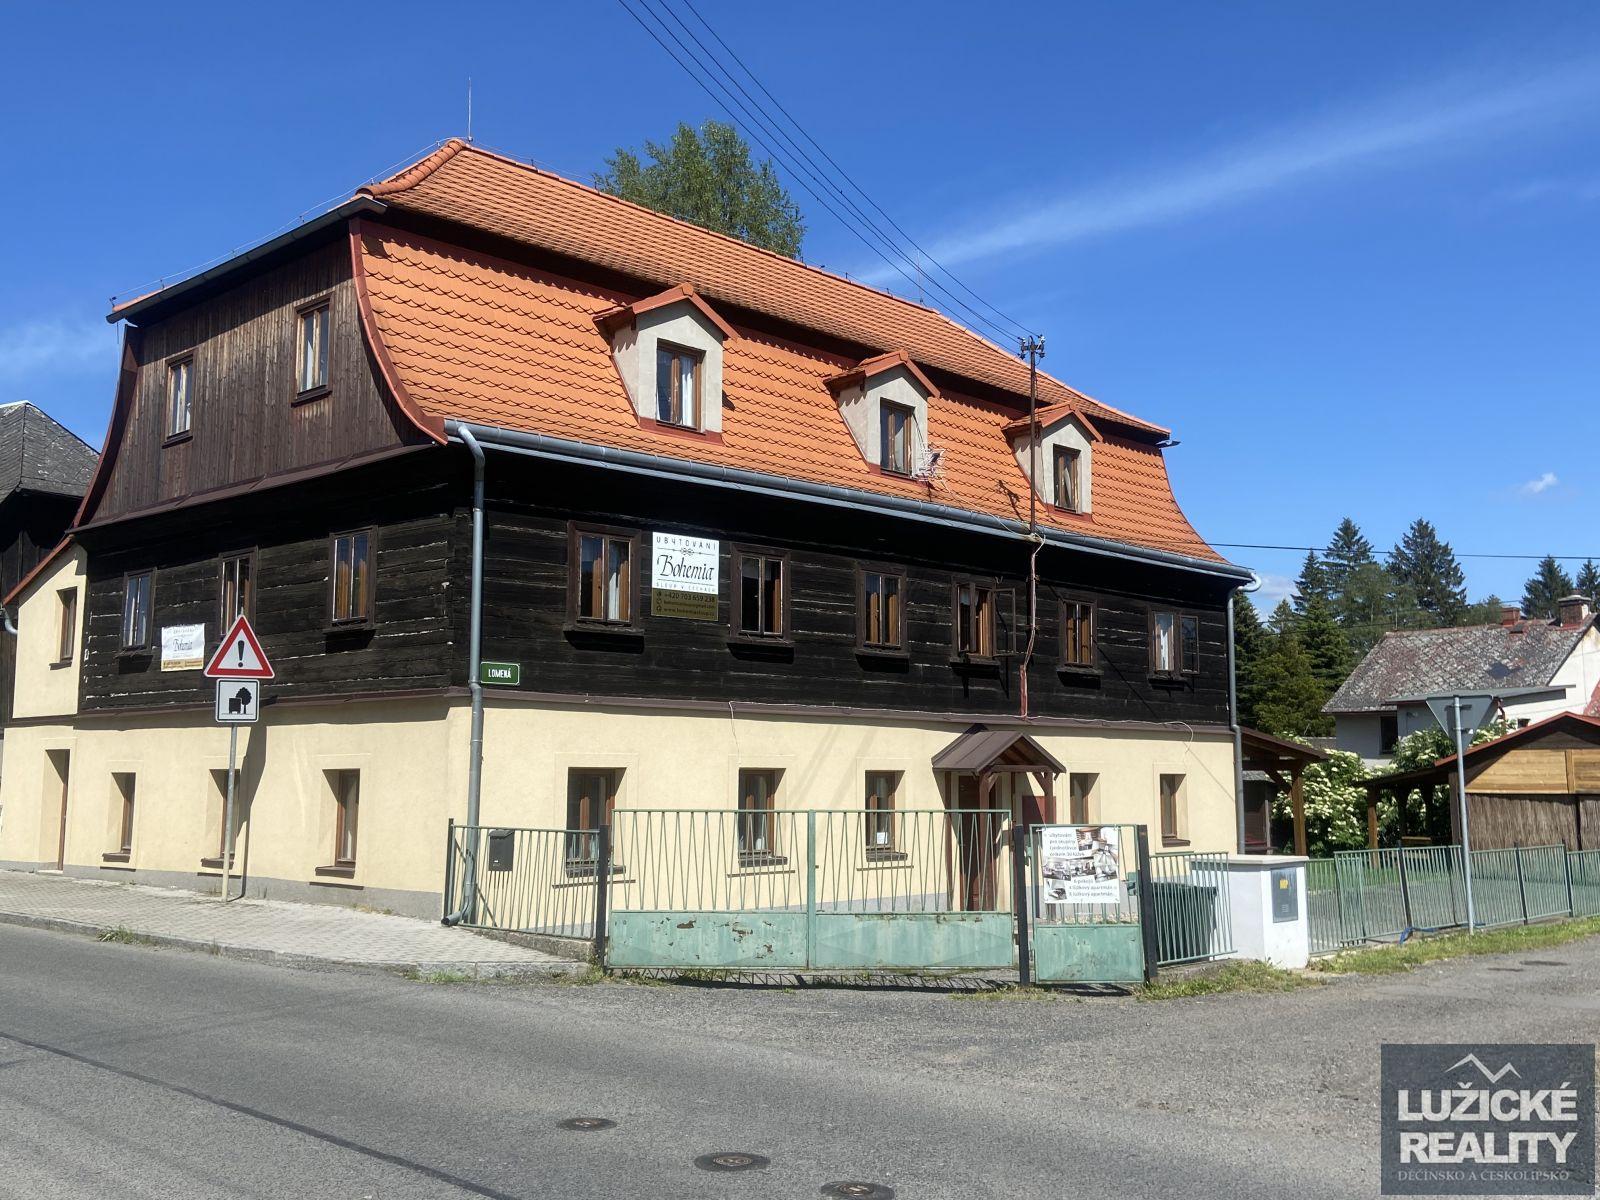 Prodej ubytovacího zařízení, 434 m2, Sloup v Čechách